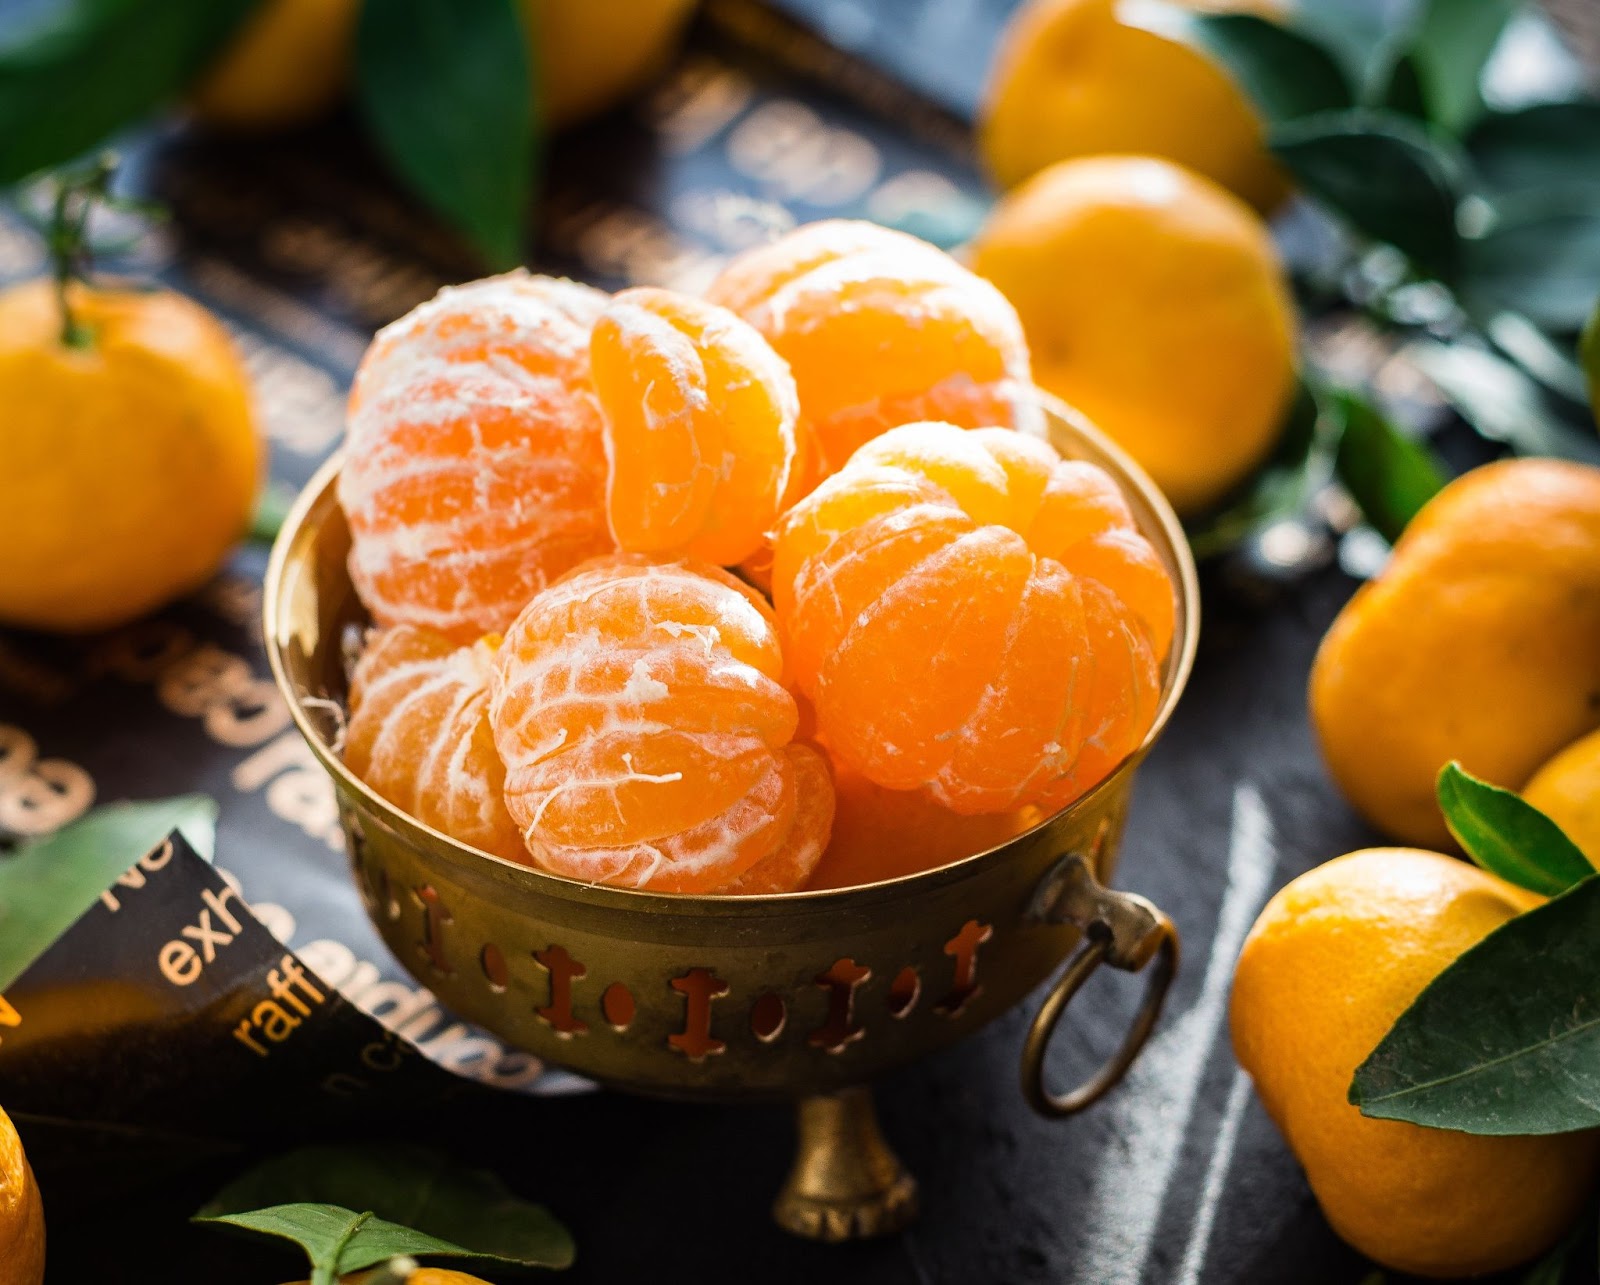  alternative methods for extending the mandarin shelf life